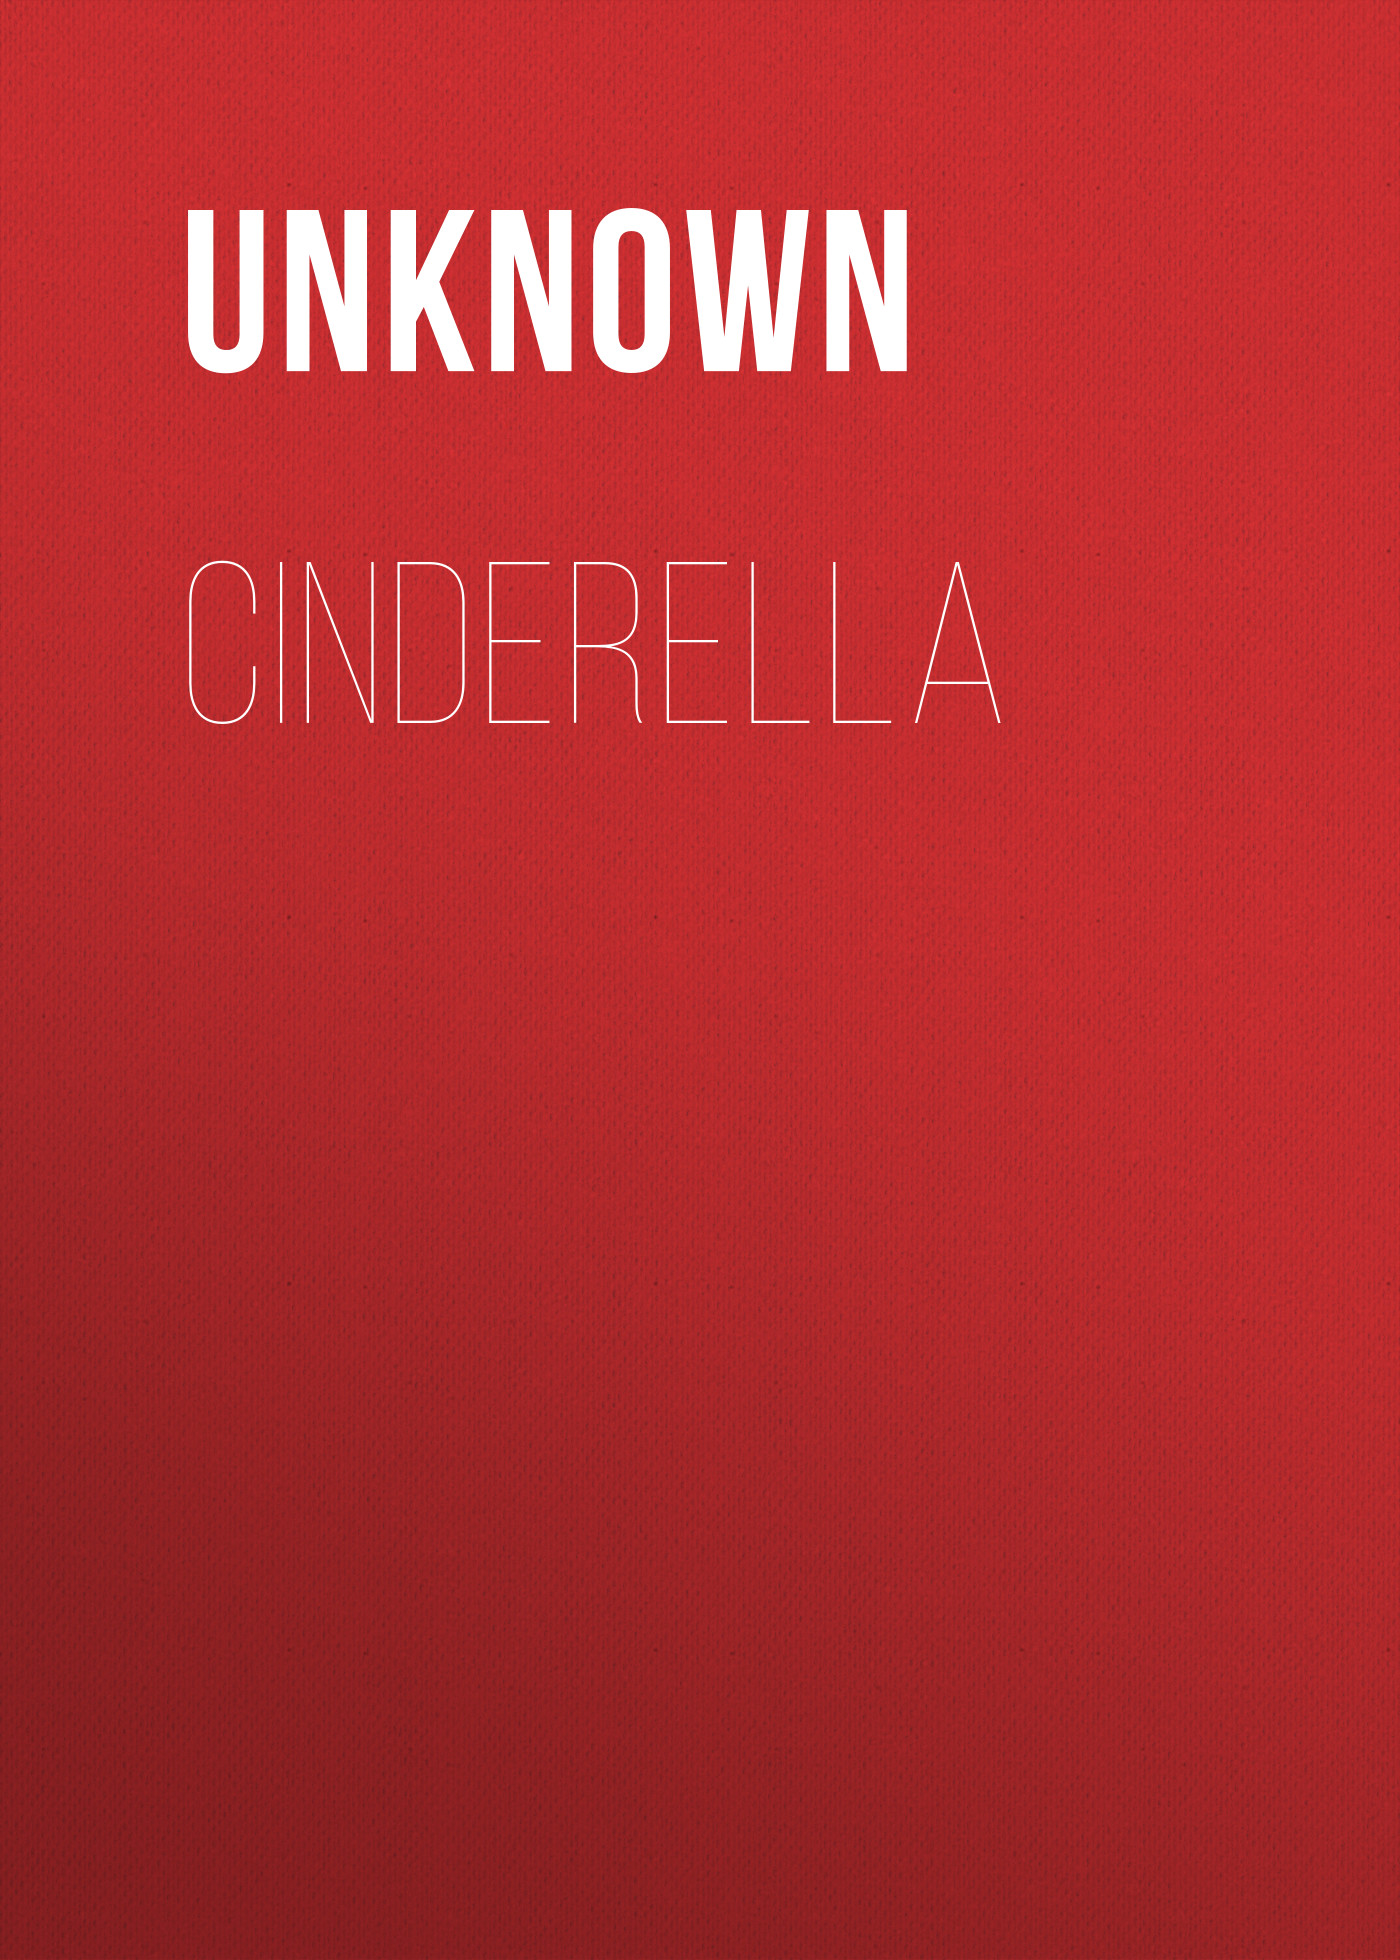 Книга Cinderella из серии , созданная Unknown Unknown, может относится к жанру Сказки, Зарубежная старинная литература, Зарубежная классика, Зарубежные детские книги. Стоимость электронной книги Cinderella с идентификатором 35495583 составляет 0 руб.